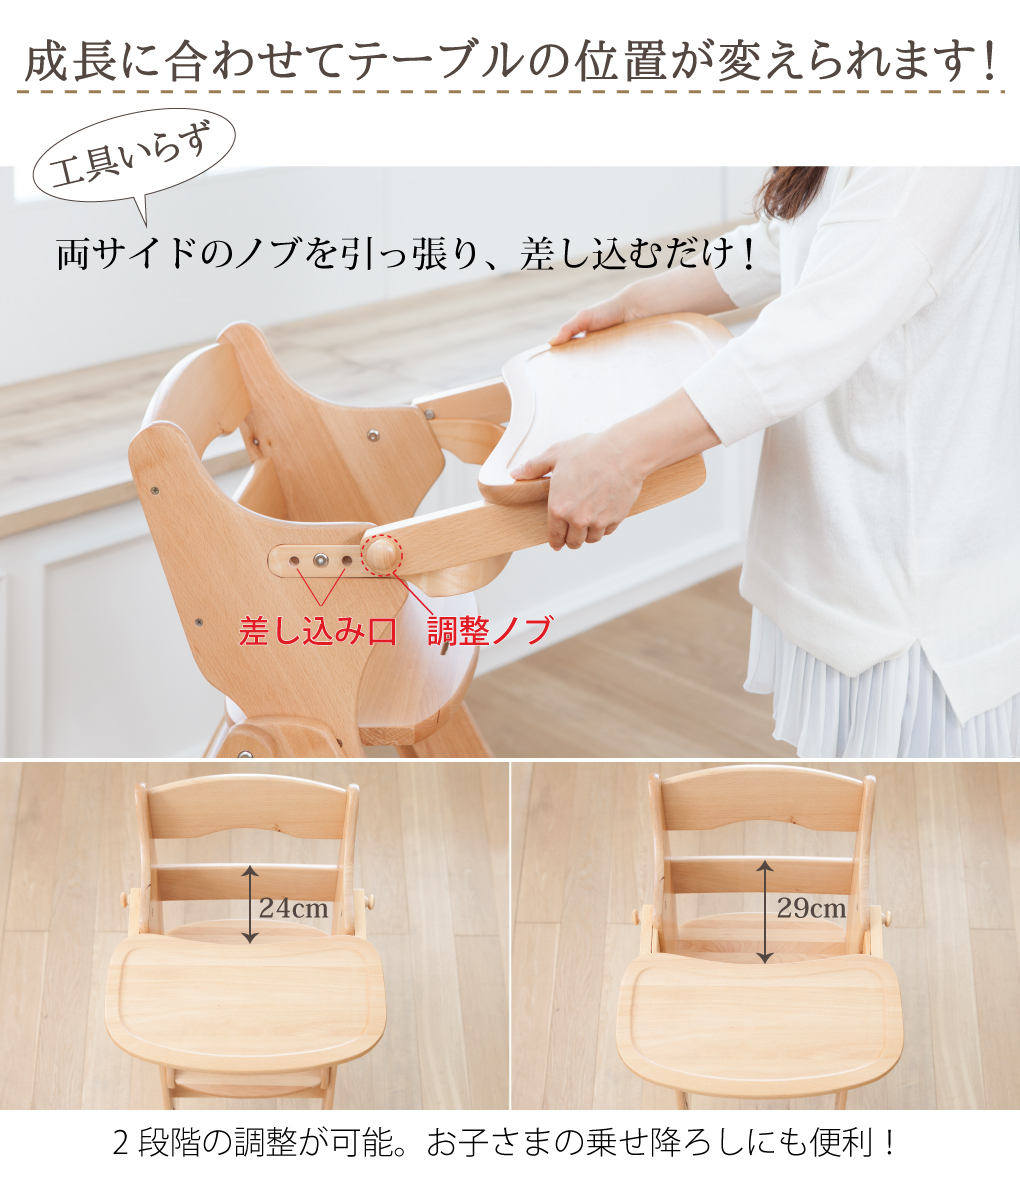 木製スマート ハイローチェア 日本育児